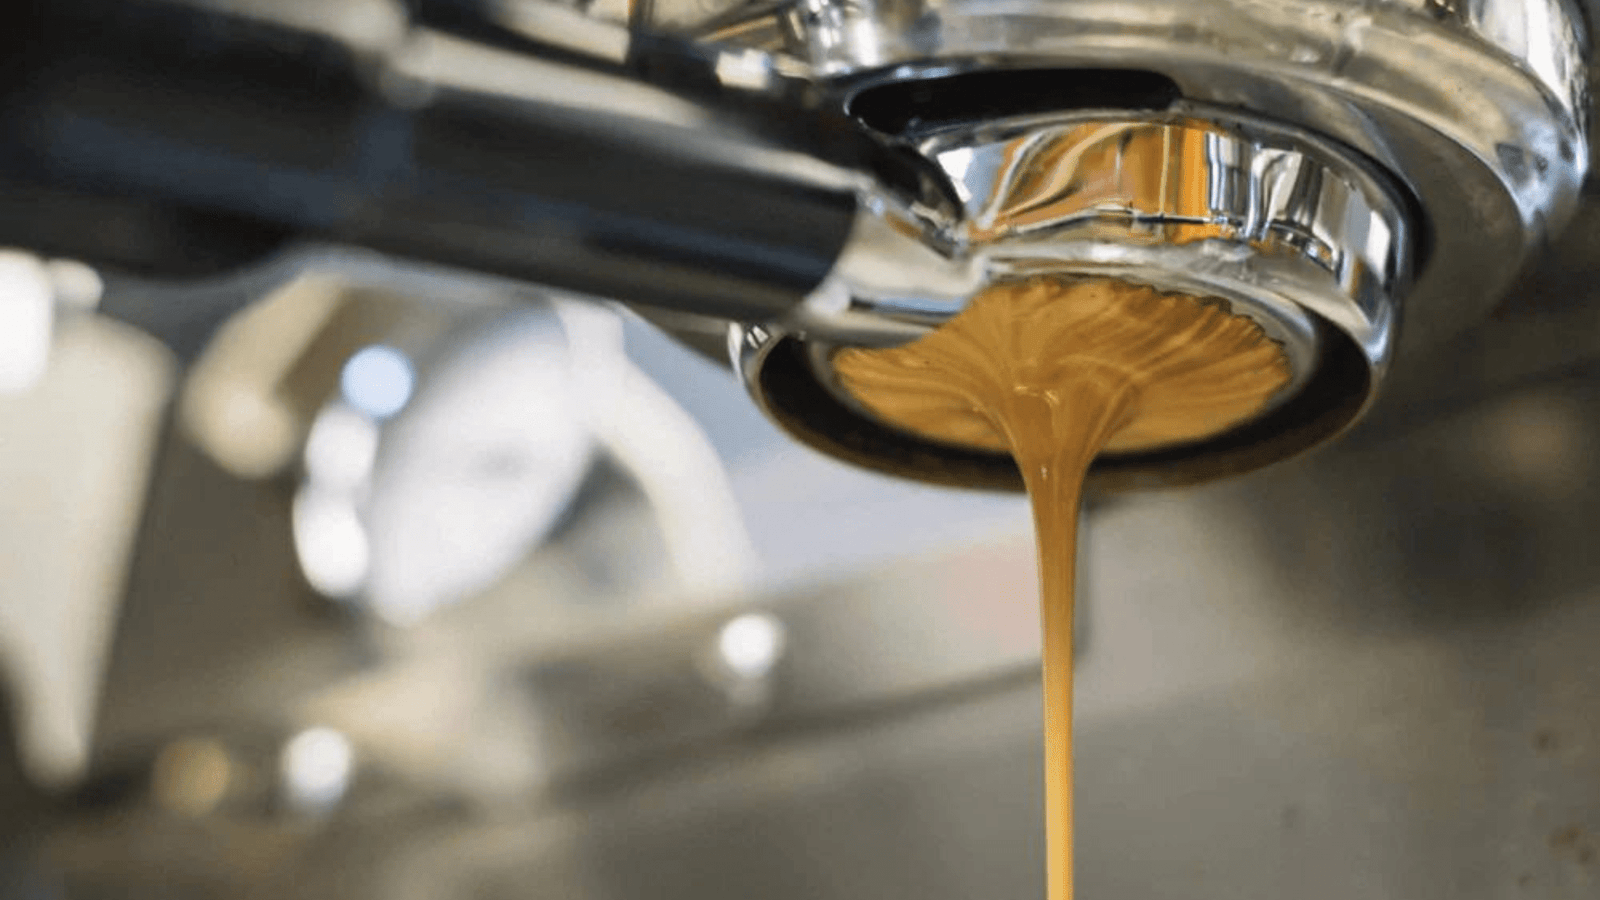 4 signes d'une mauvaise extraction d'espresso